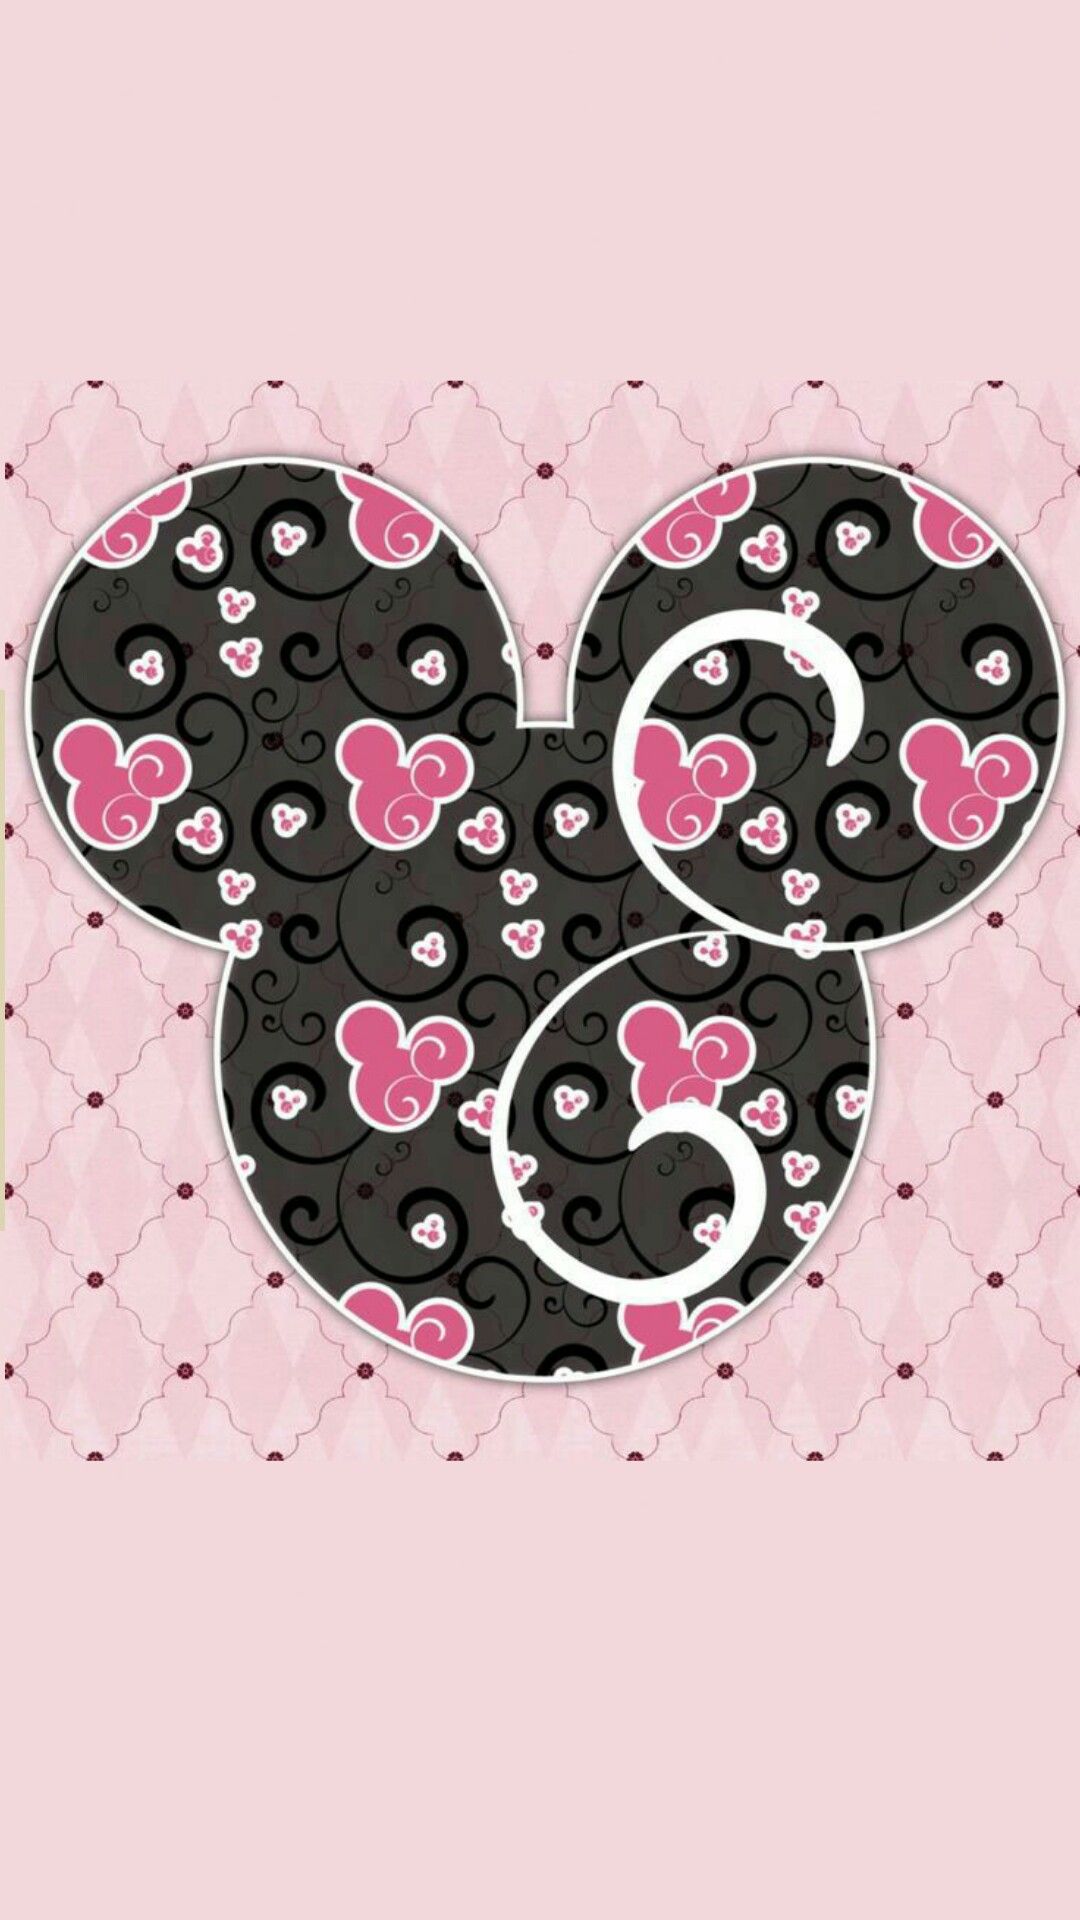 ミッキーミニーマウス壁紙,ピンク,心臓,パターン,図,設計